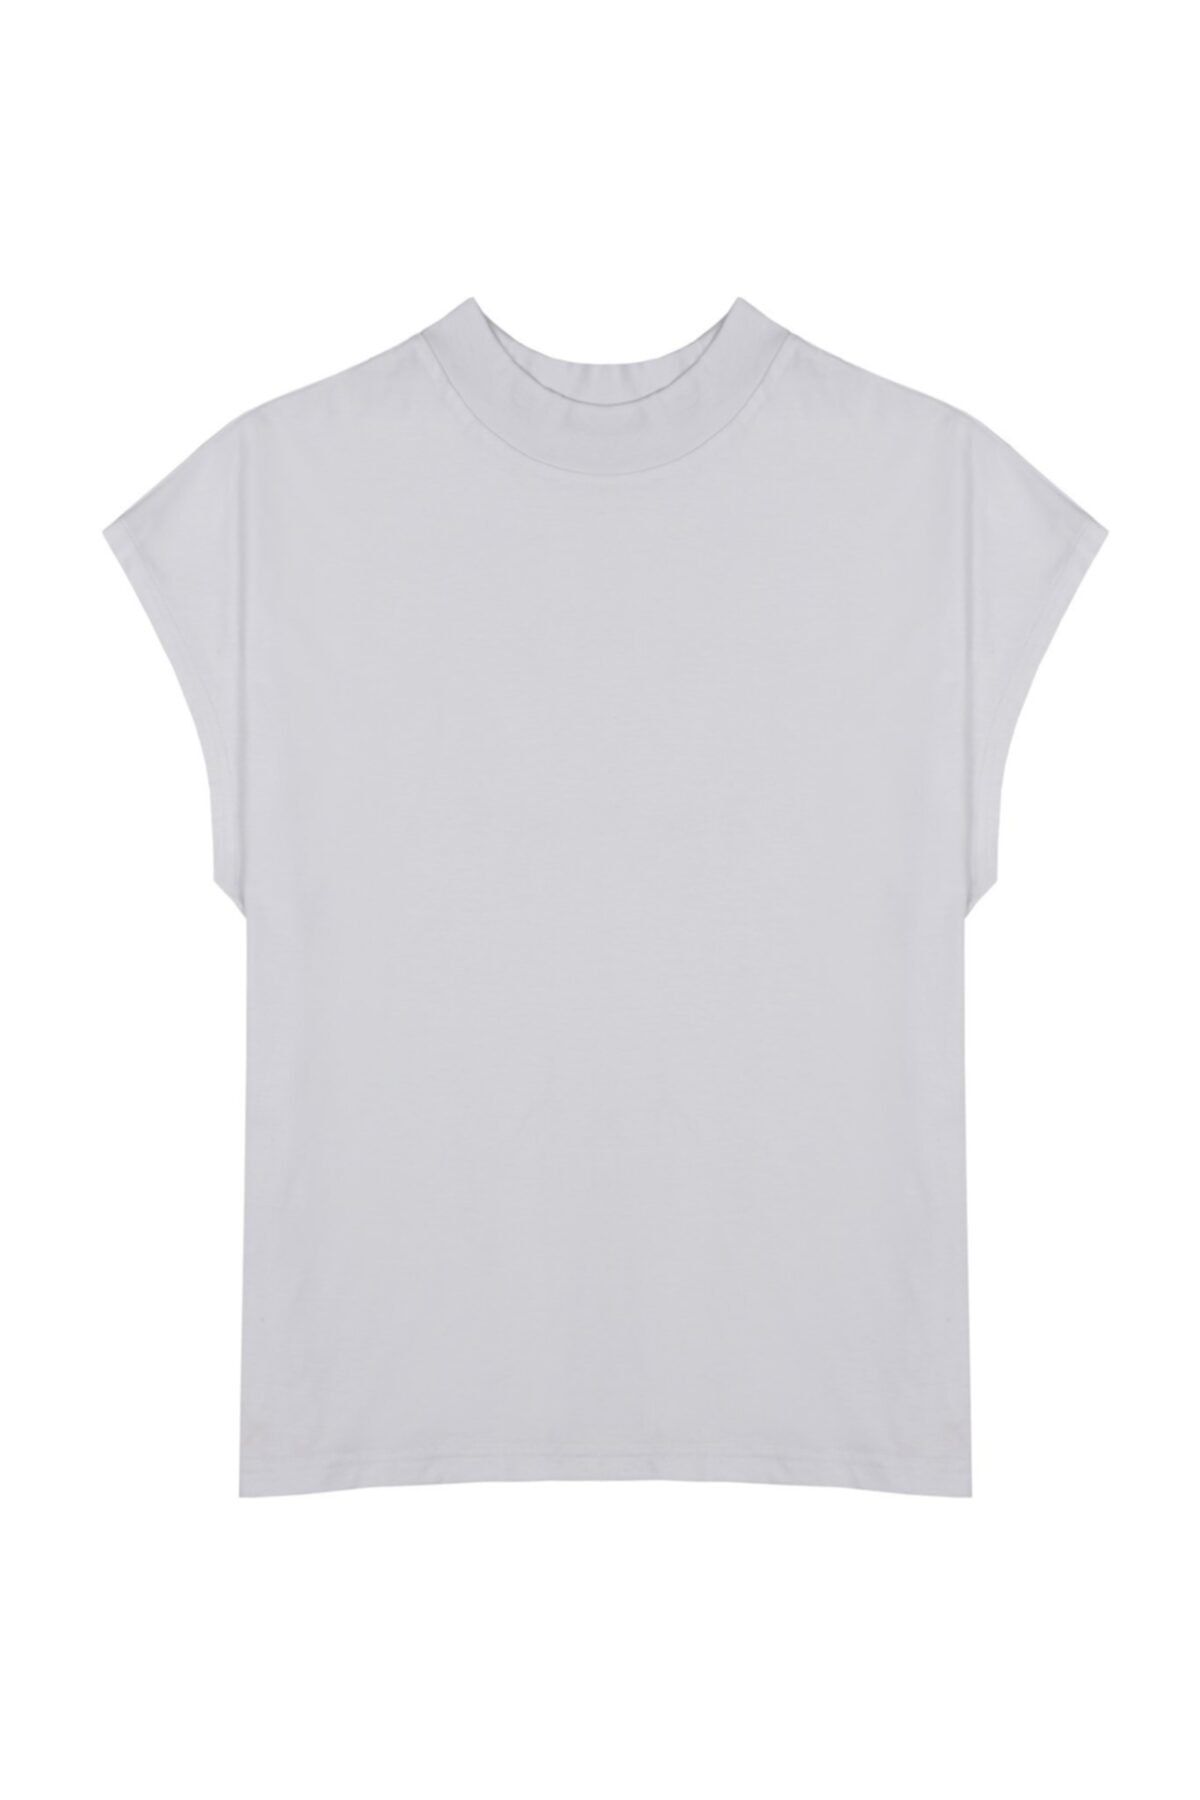 Basic Co Cate Dik Yaka (Mock Neck) Basic Beyaz T-shirt